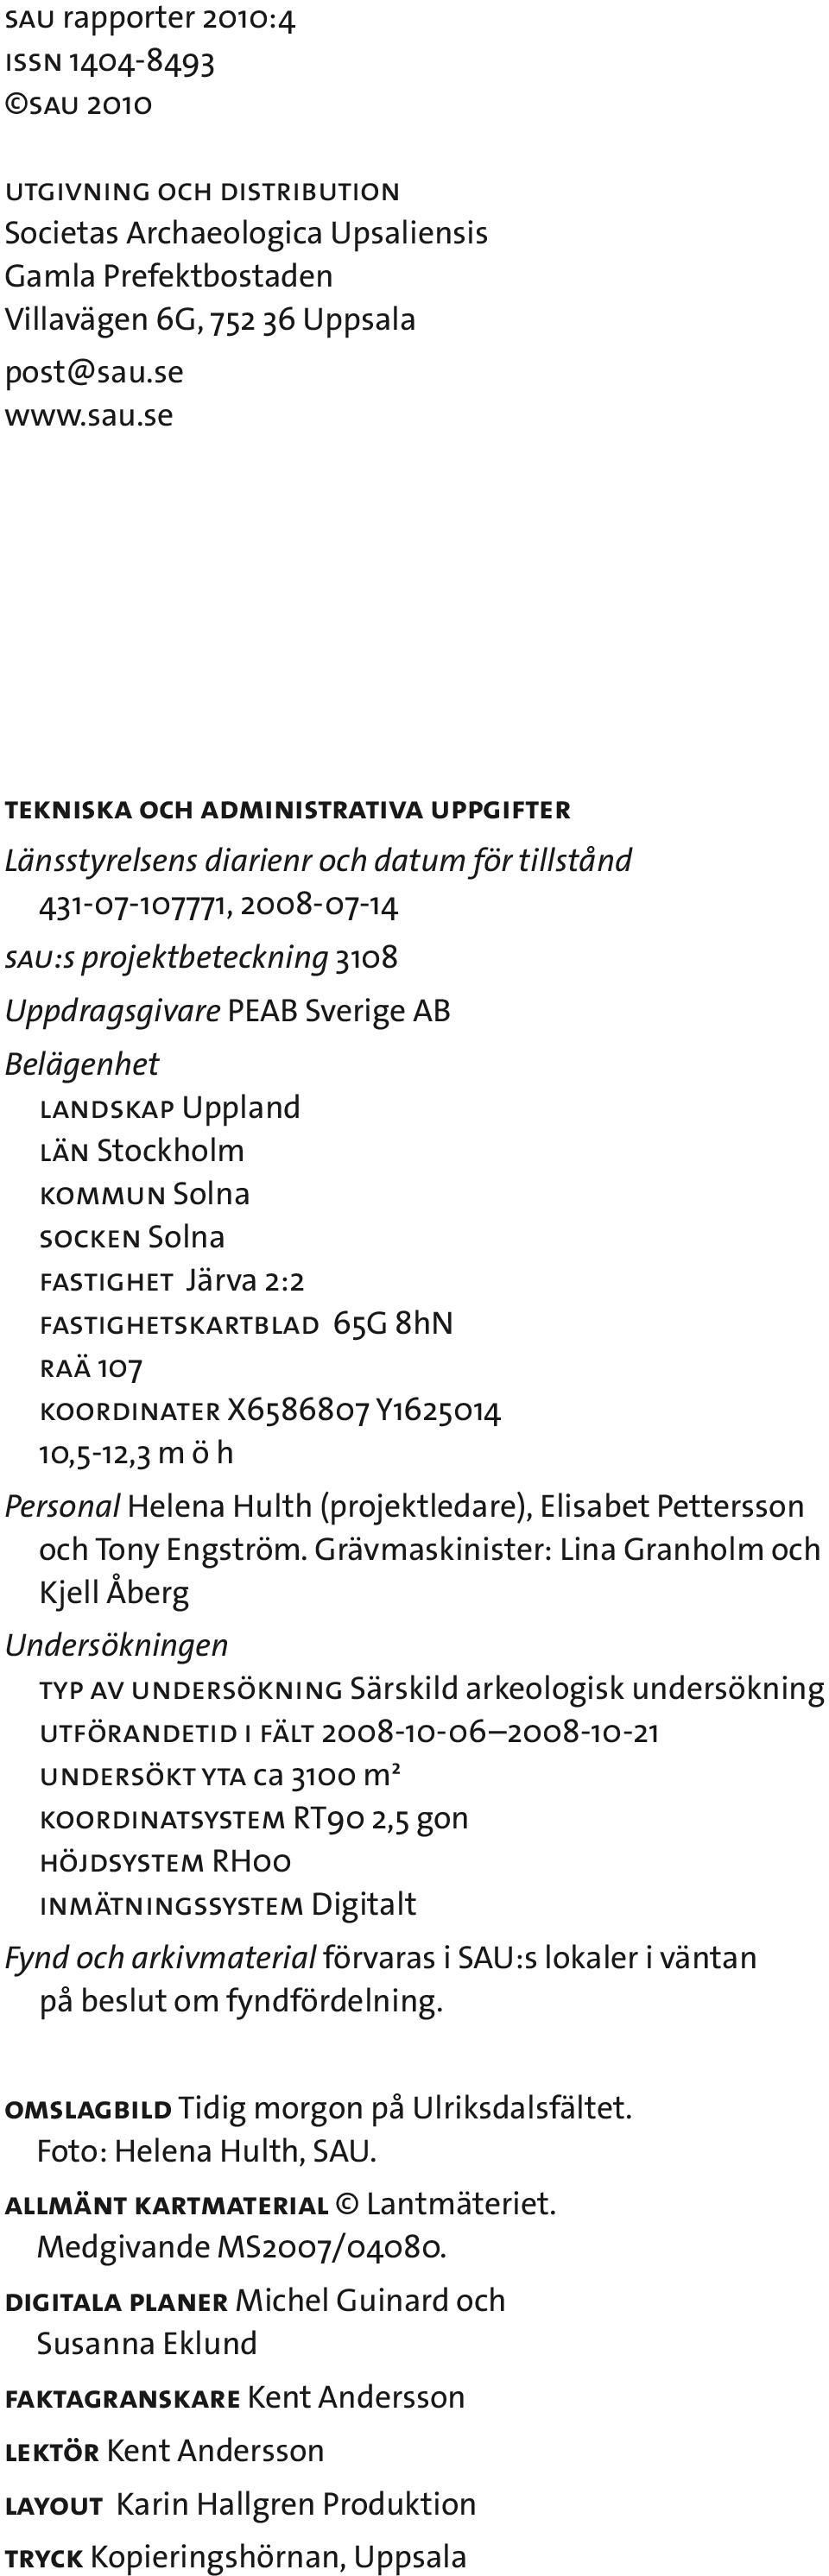 Stockholm kommun Solna socken Solna fastighet Järva 2:2 fastighetskartblad 65G 8hN raä 107 koordinater X6586807 Y1625014 10,5-12,3 m ö h Personal Helena Hulth (projektledare), Elisabet Pettersson och